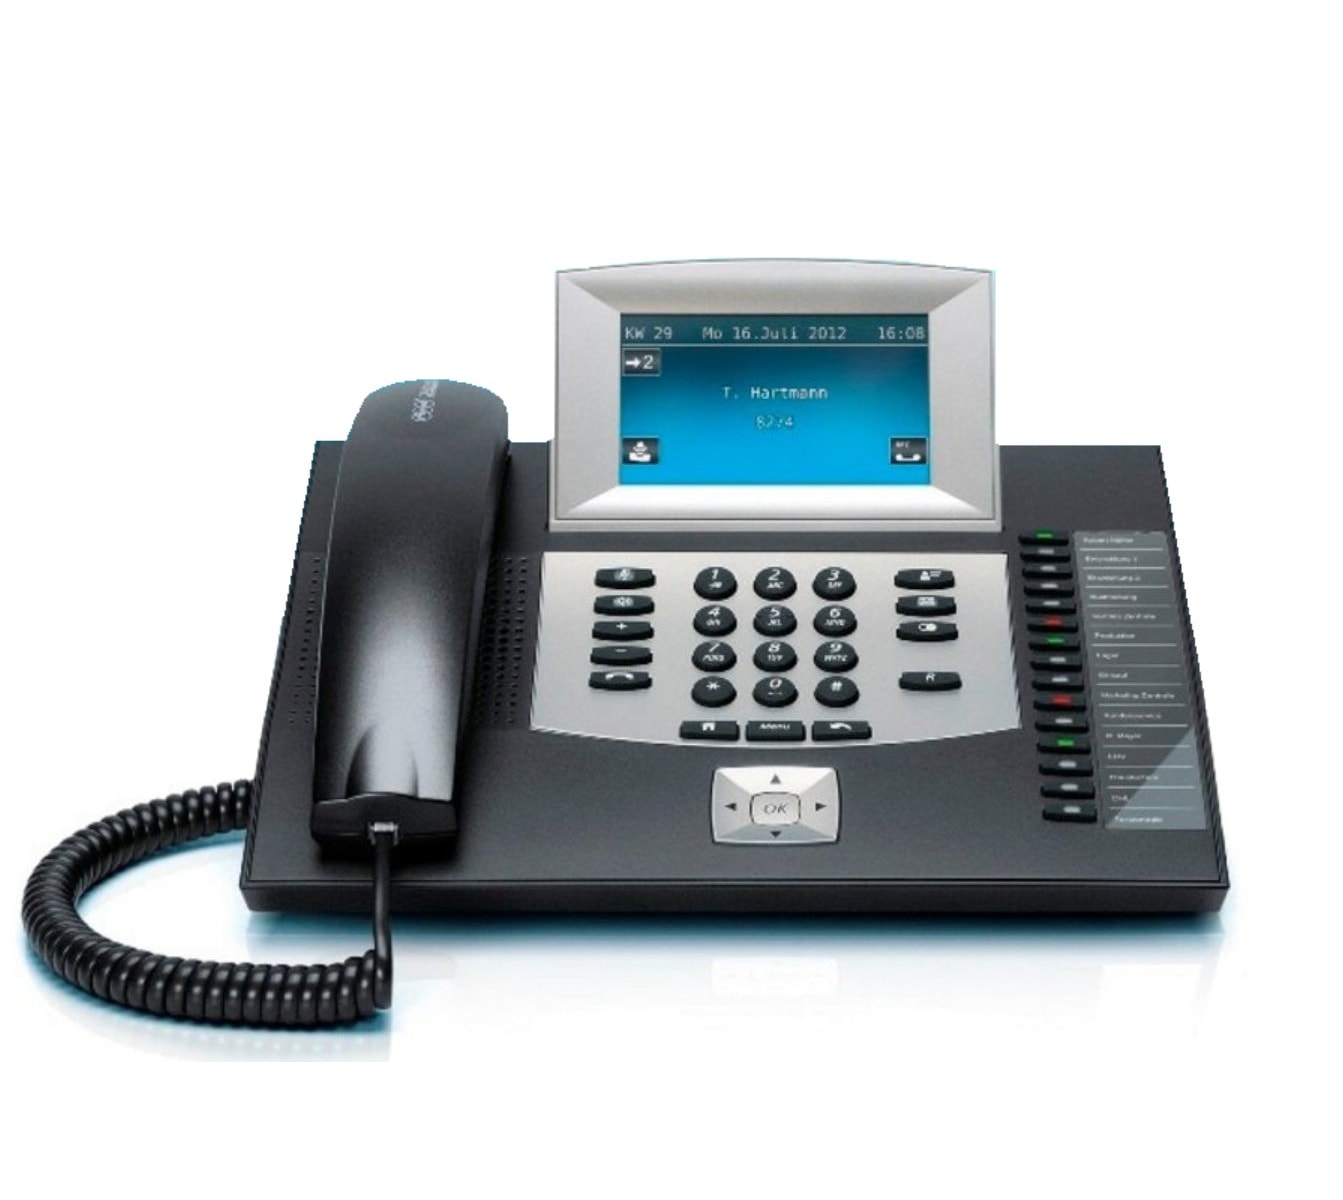 AUERSWALD Telefon COMfortel 2600 ISDN, schwarz